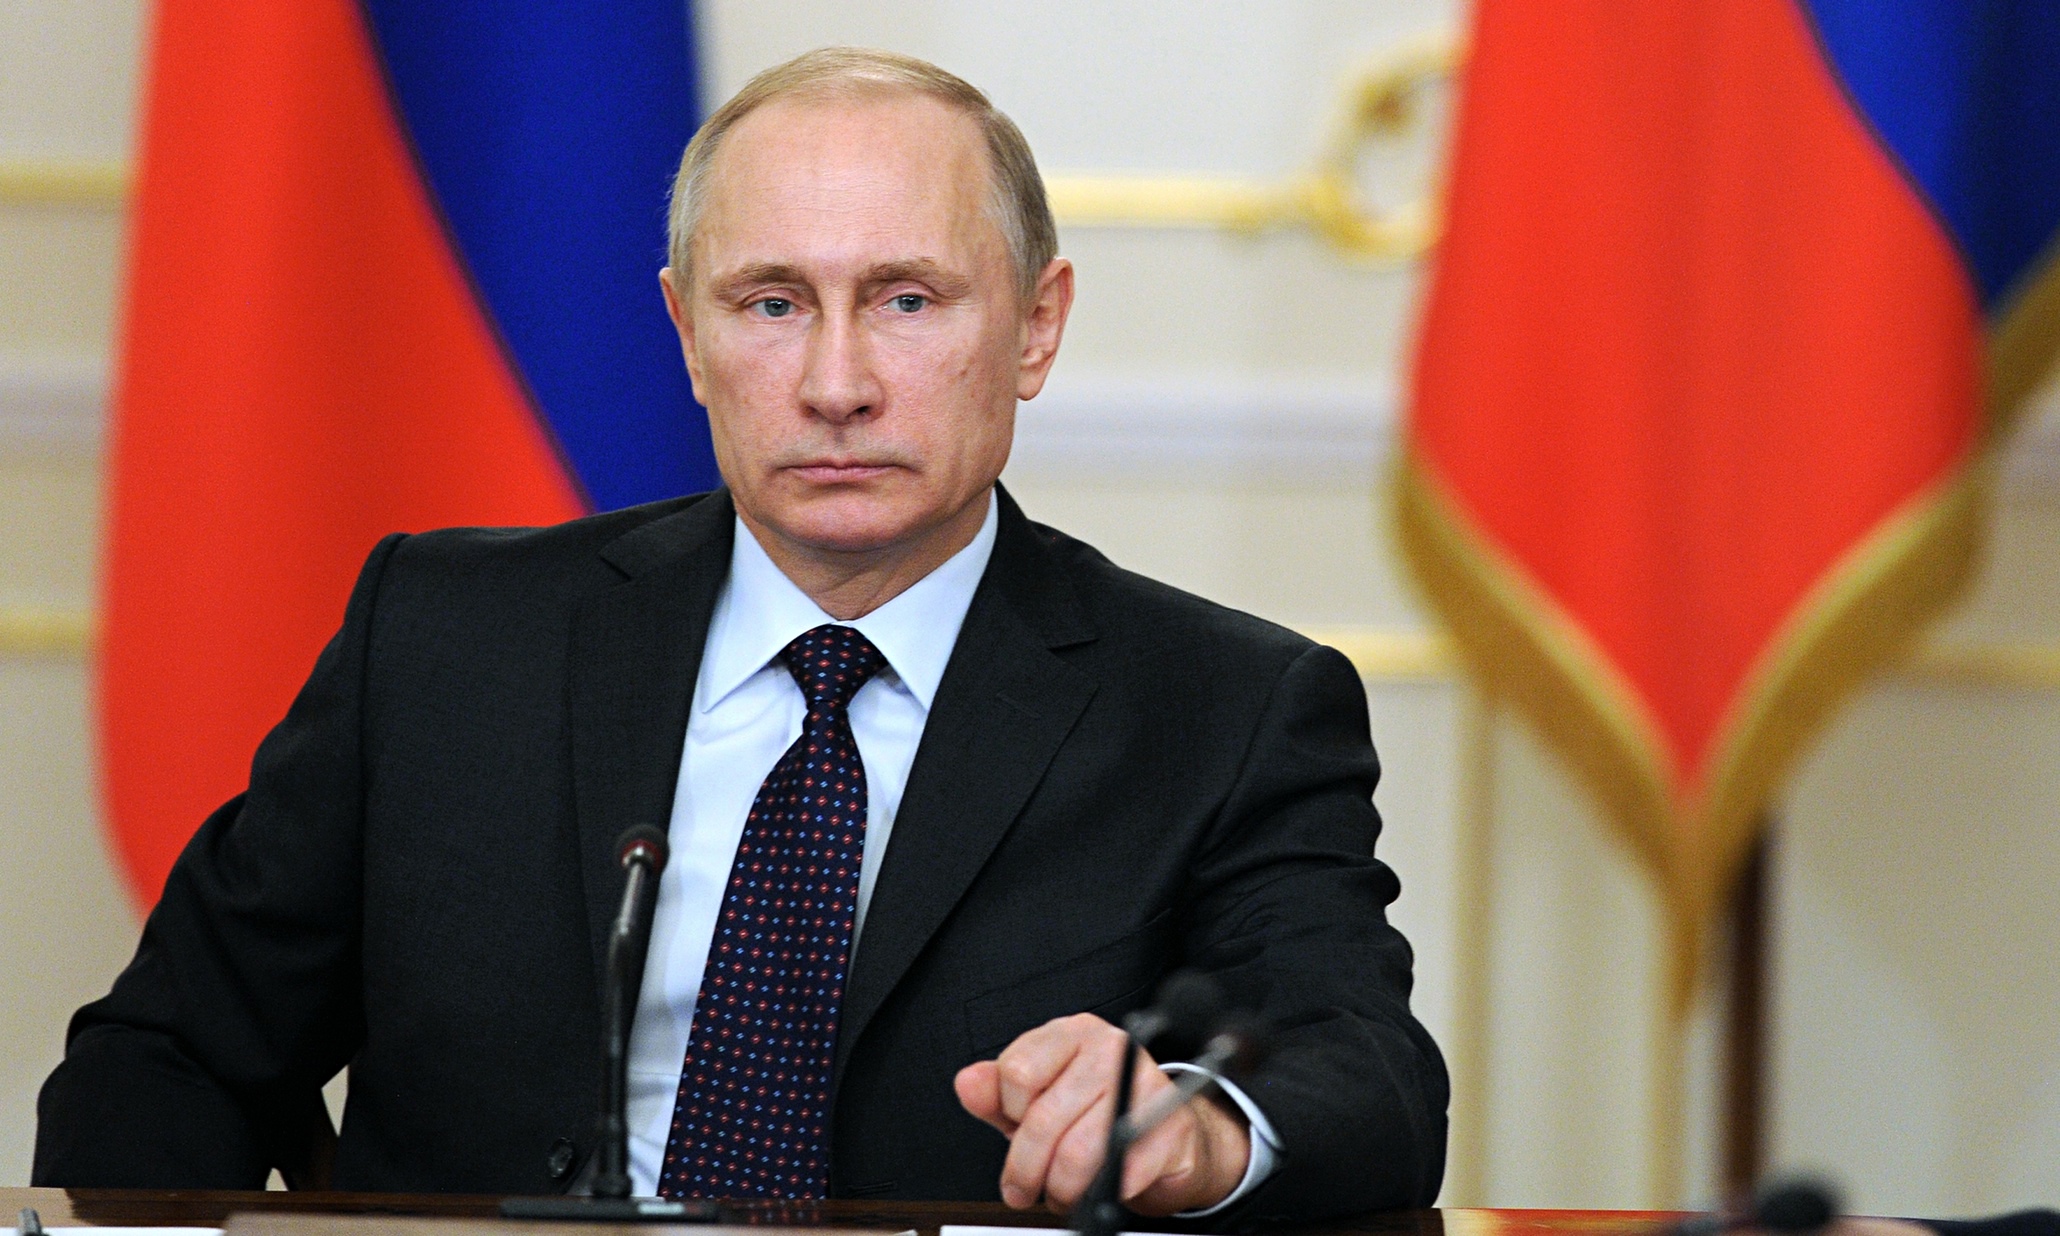 Β.Πούτιν: «Να είμαστε όλοι προσεκτικοί για να αποφύγουμε την πρακτική των περιοριστικών μέτρων»